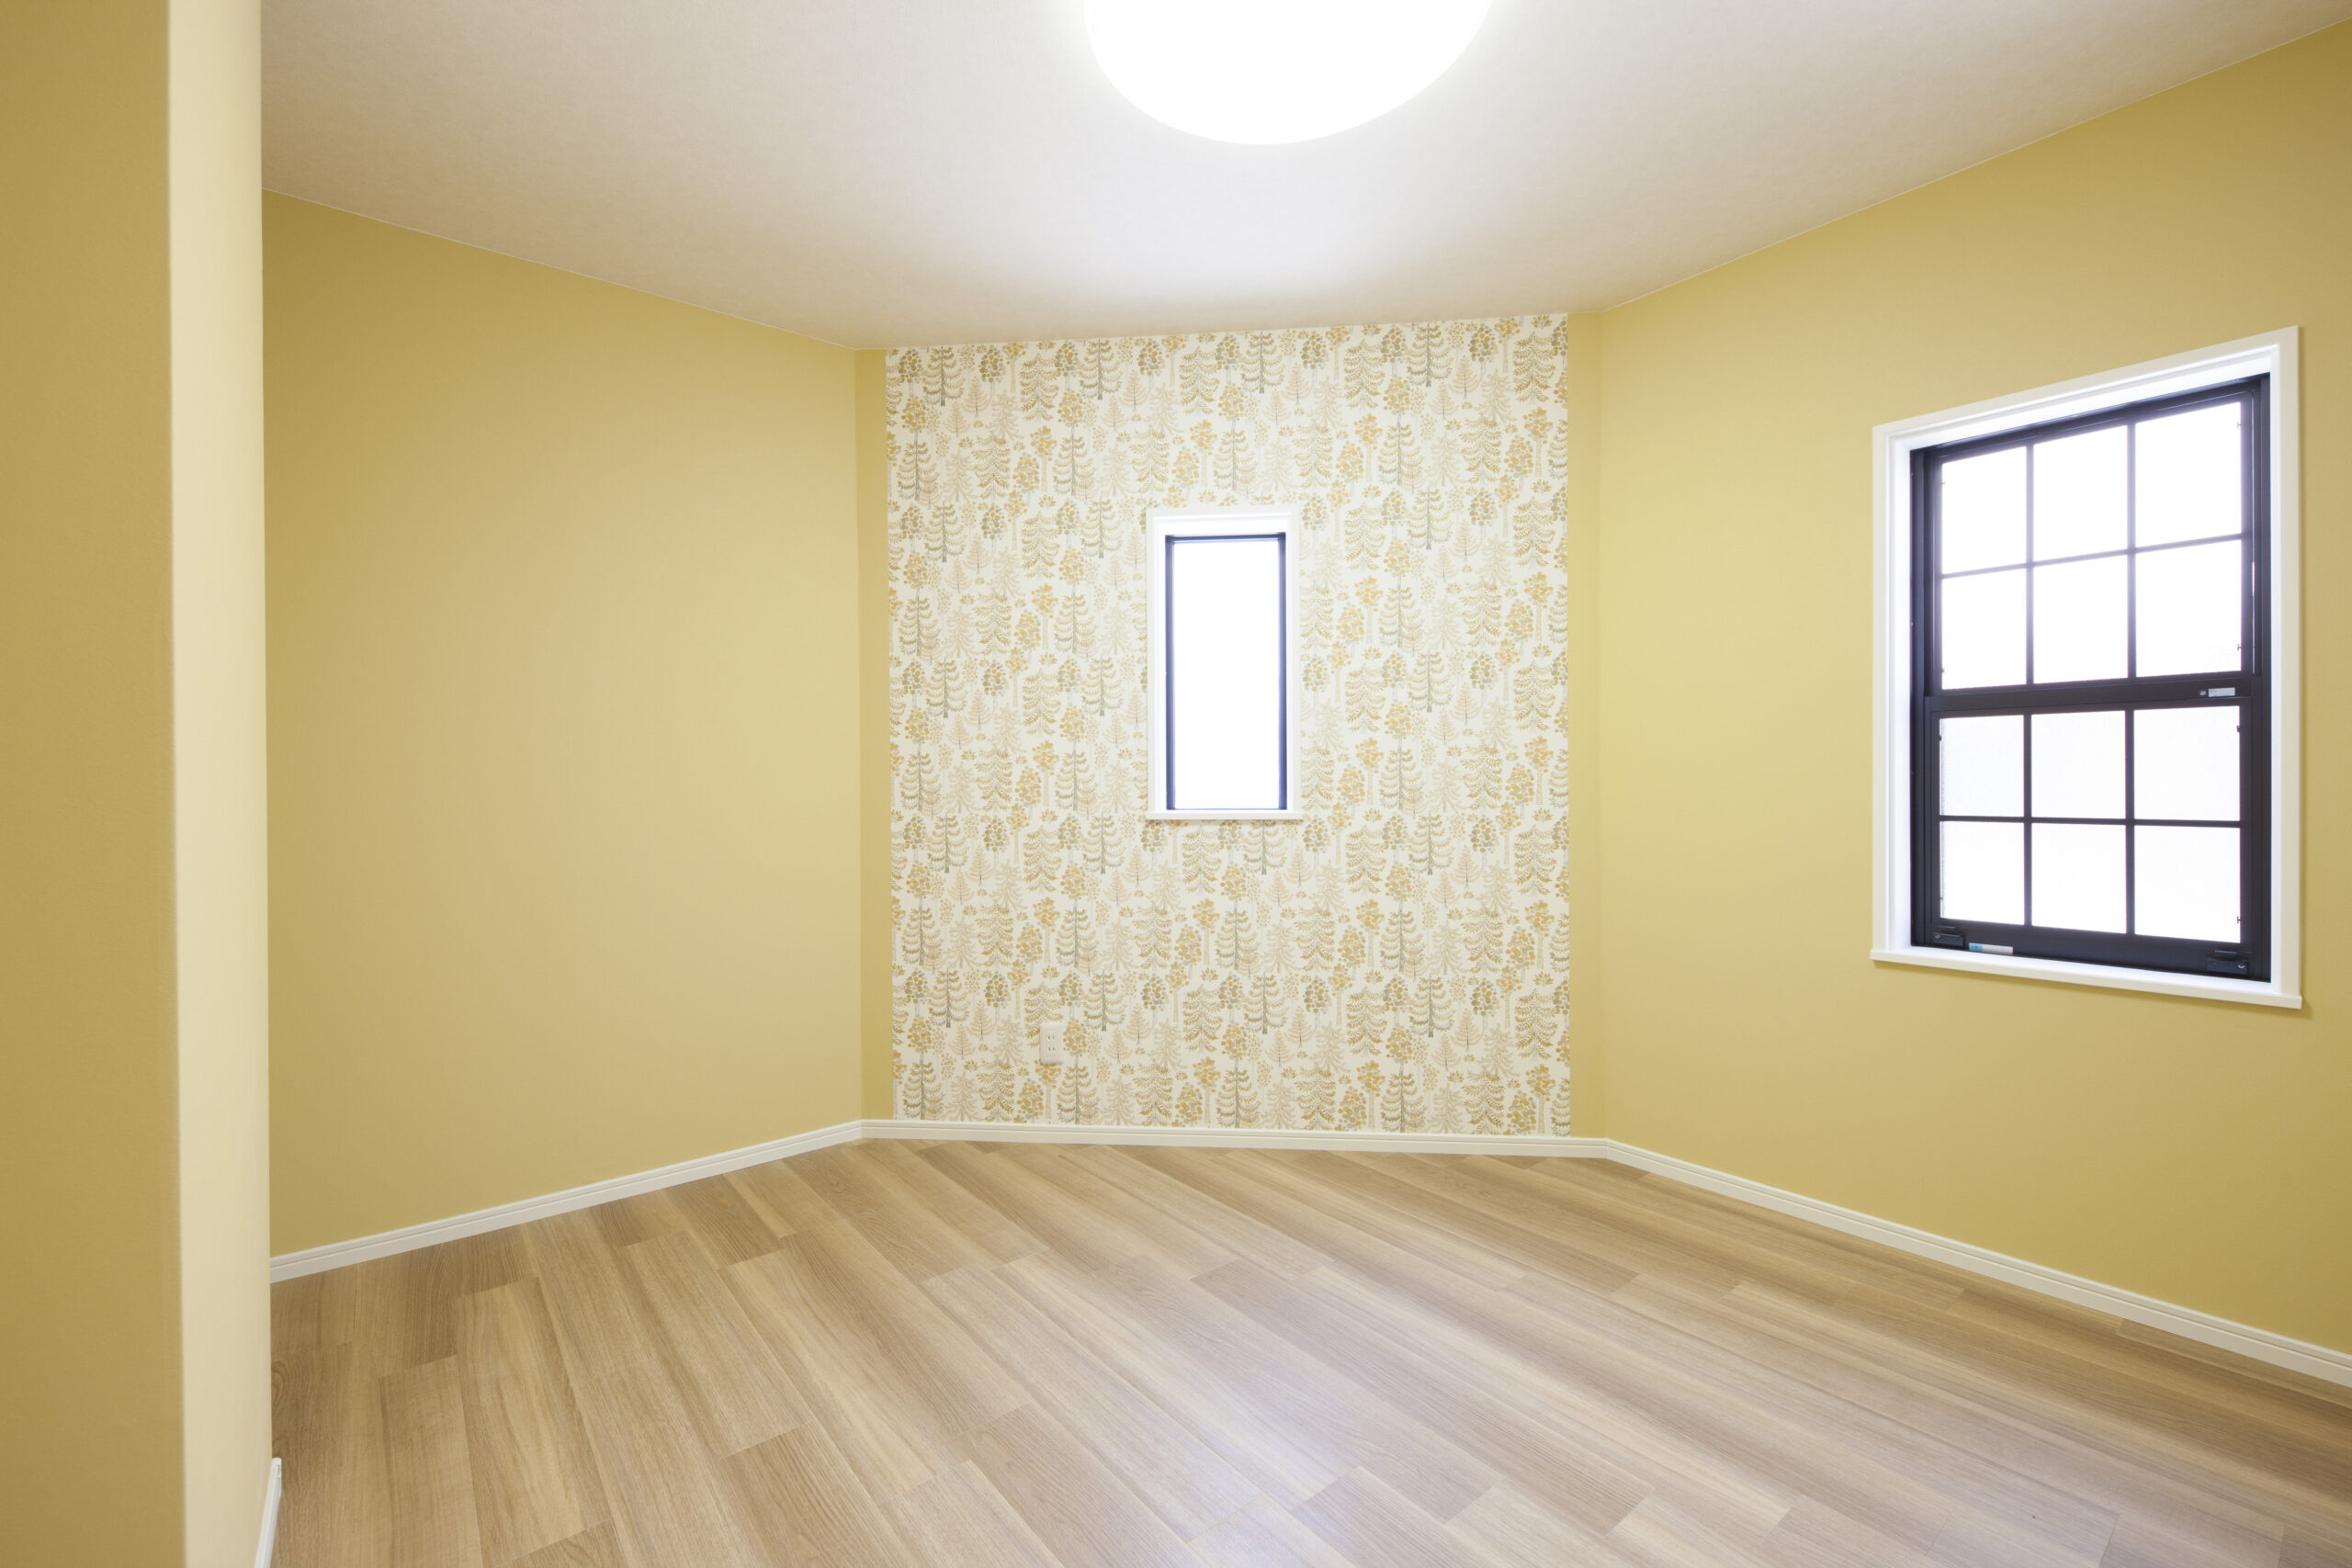 東大阪市で黄色の壁紙に張り替えてパッと明るい印象の室内にリフォームしました